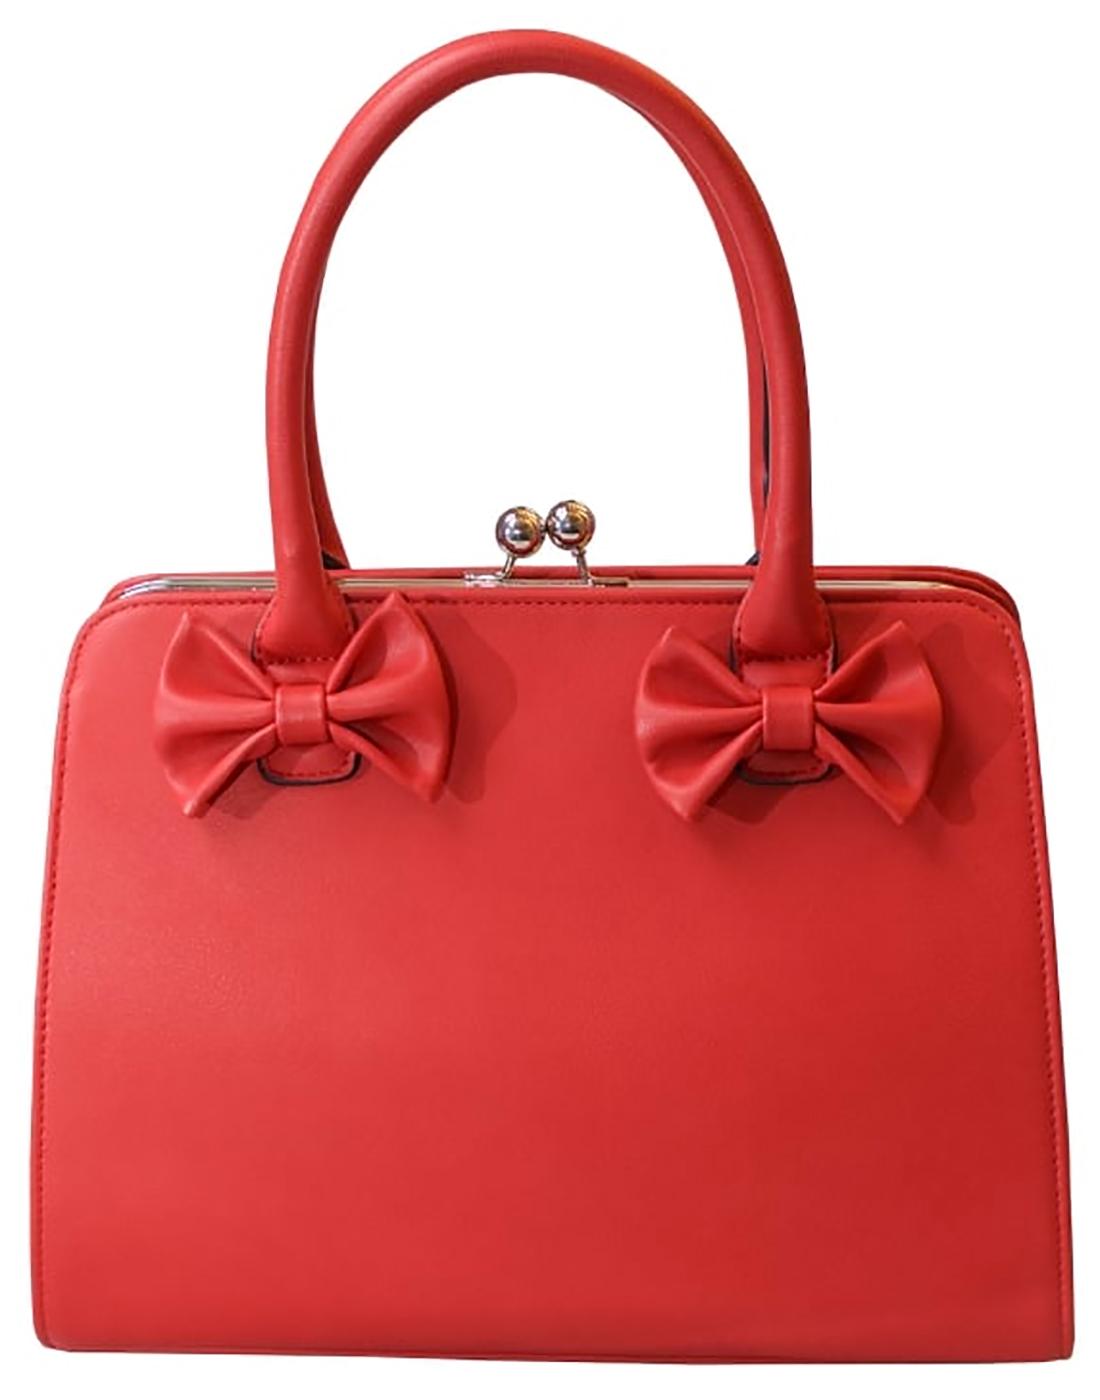 COLLECTIF Jessica Retro Vintage 50s Bow Handbag in Red